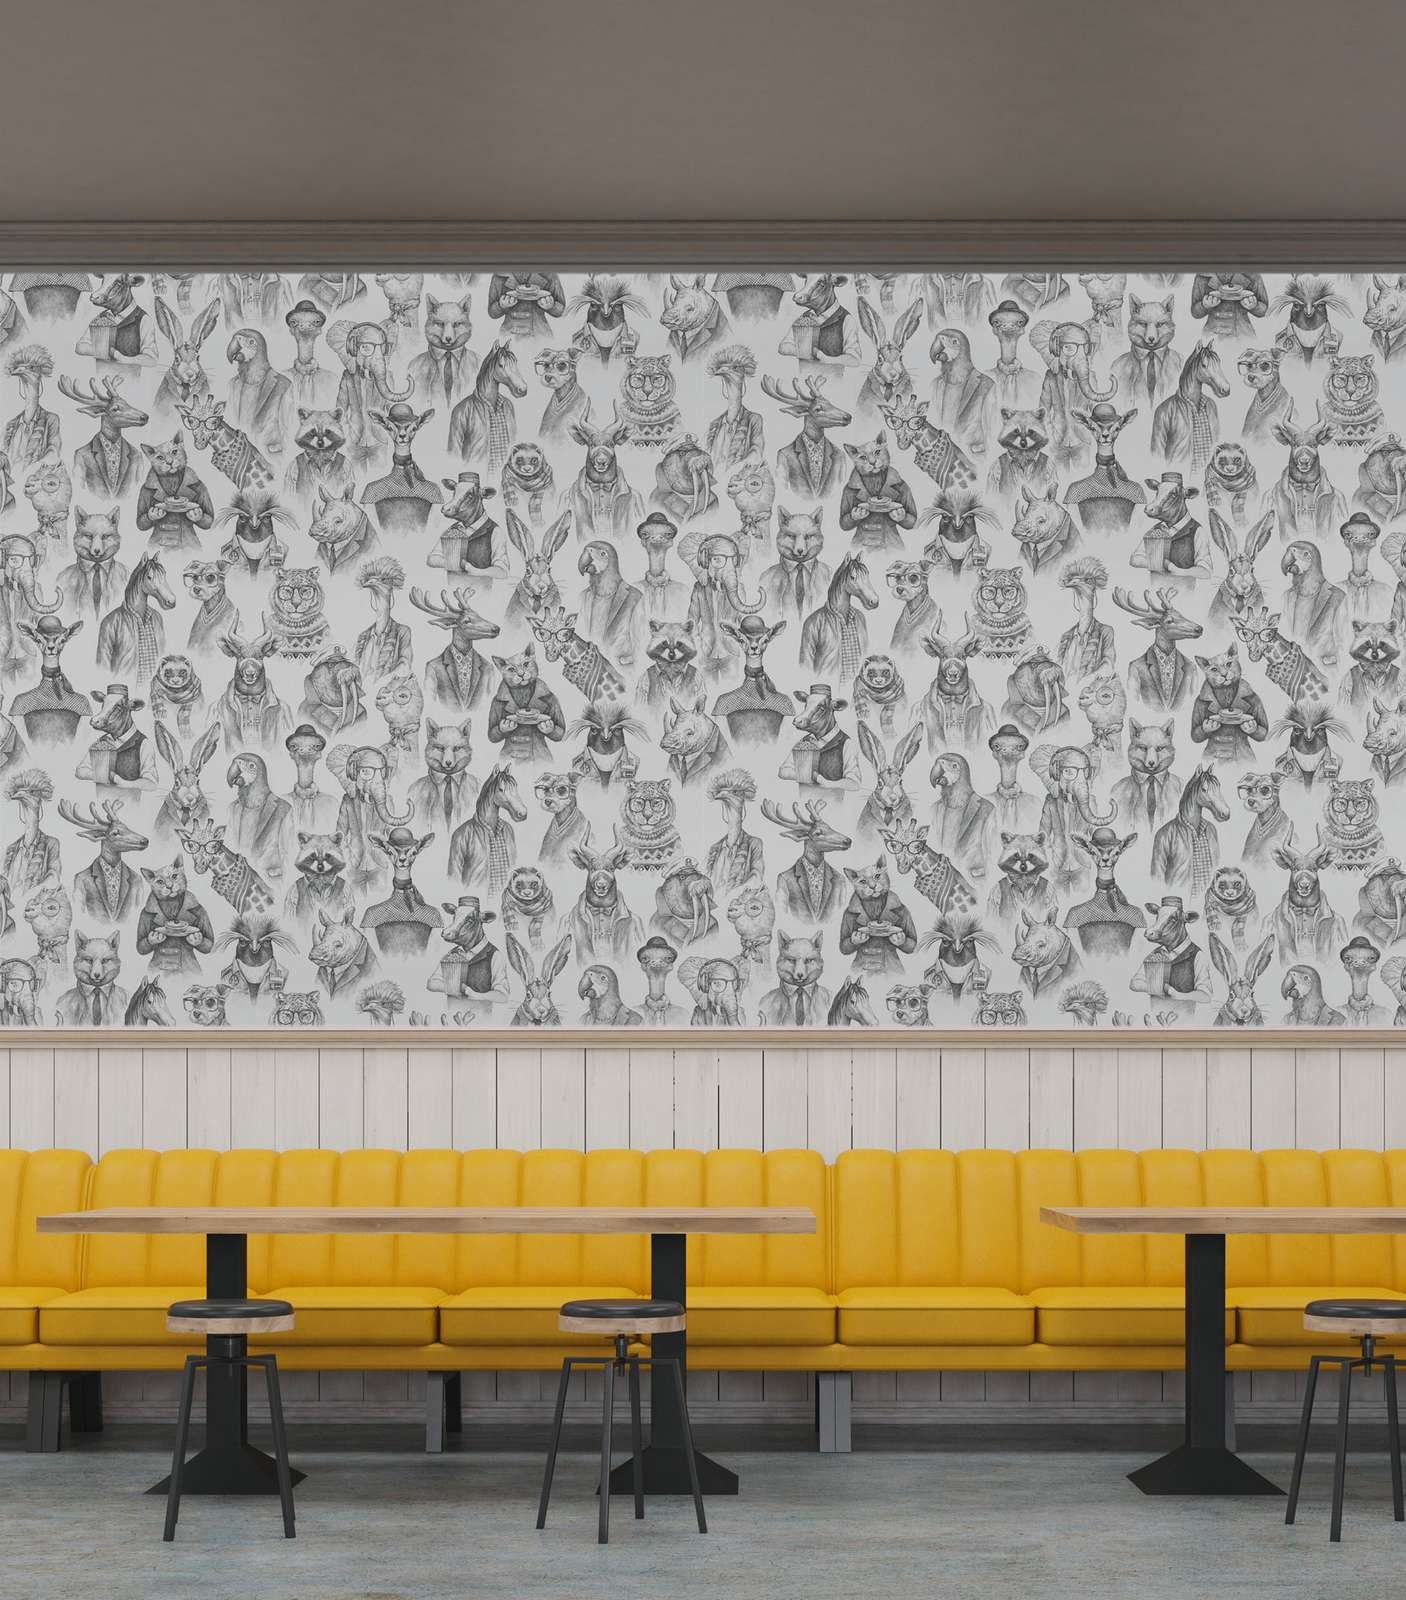             Papel pintado no tejido fabulous animal world de New-Walls - blanco y negro
        